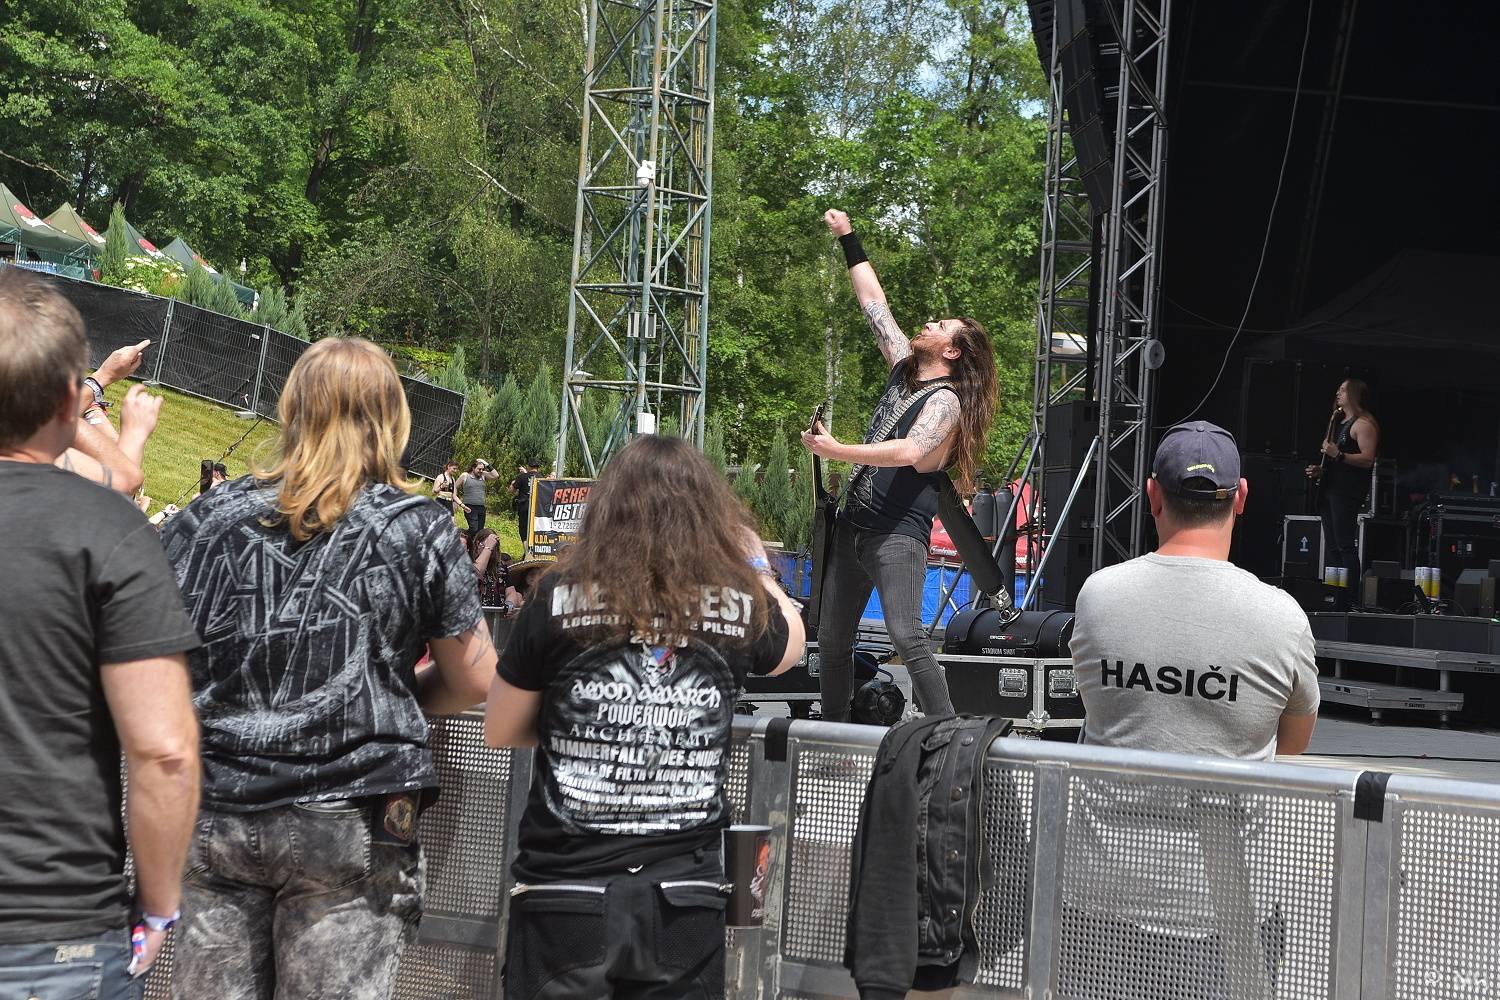 Čtyři dny plné metalu! Metalfest zahájili Exumer, Bloodbound nebo Evergrey